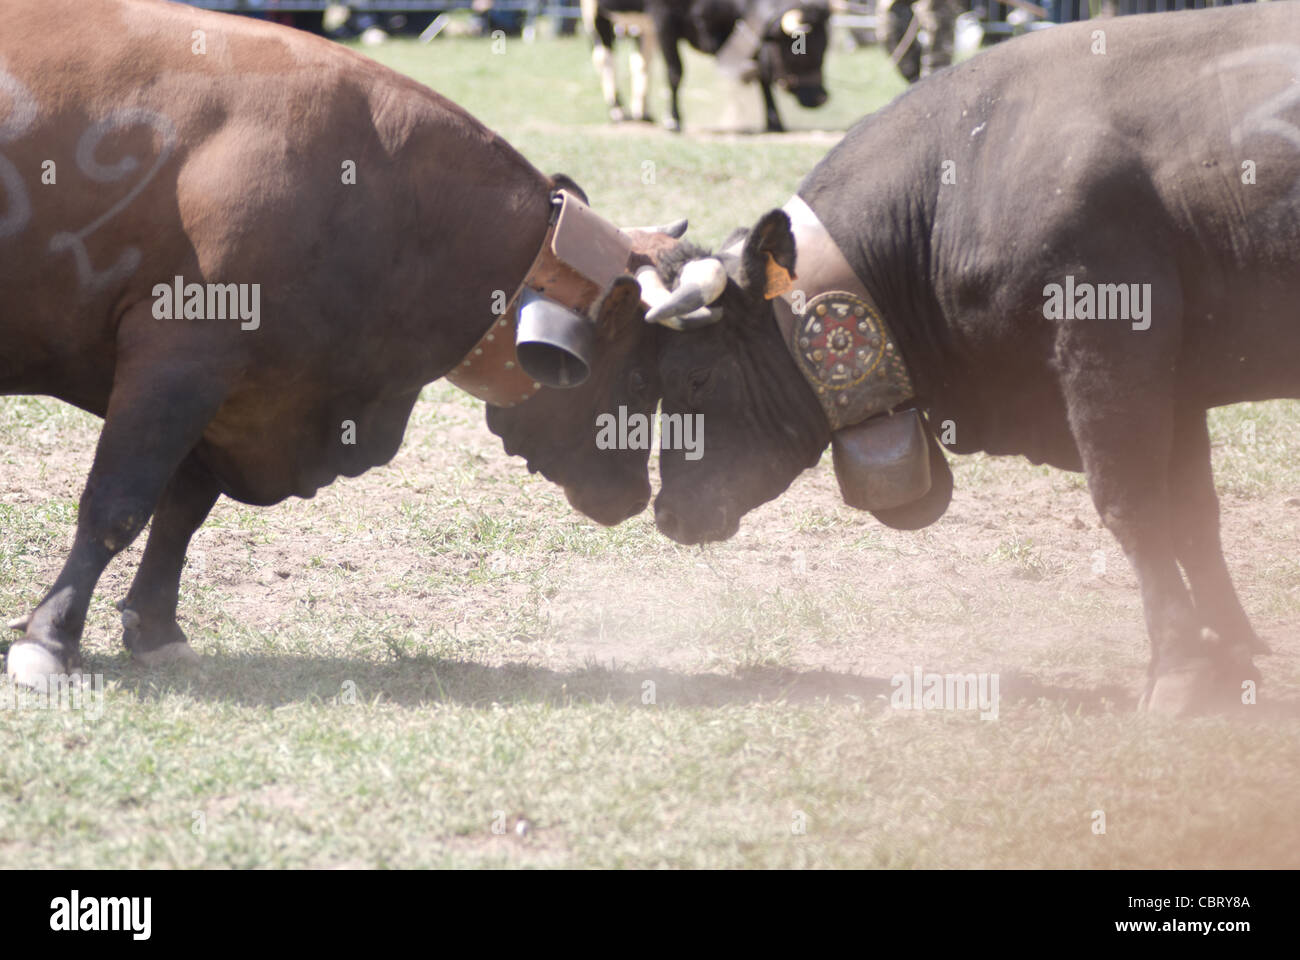 La bataille de reines (bataille des reines), un tournoi de combats entre les vaches. Pinte, vallée d'aoste, Italie Banque D'Images